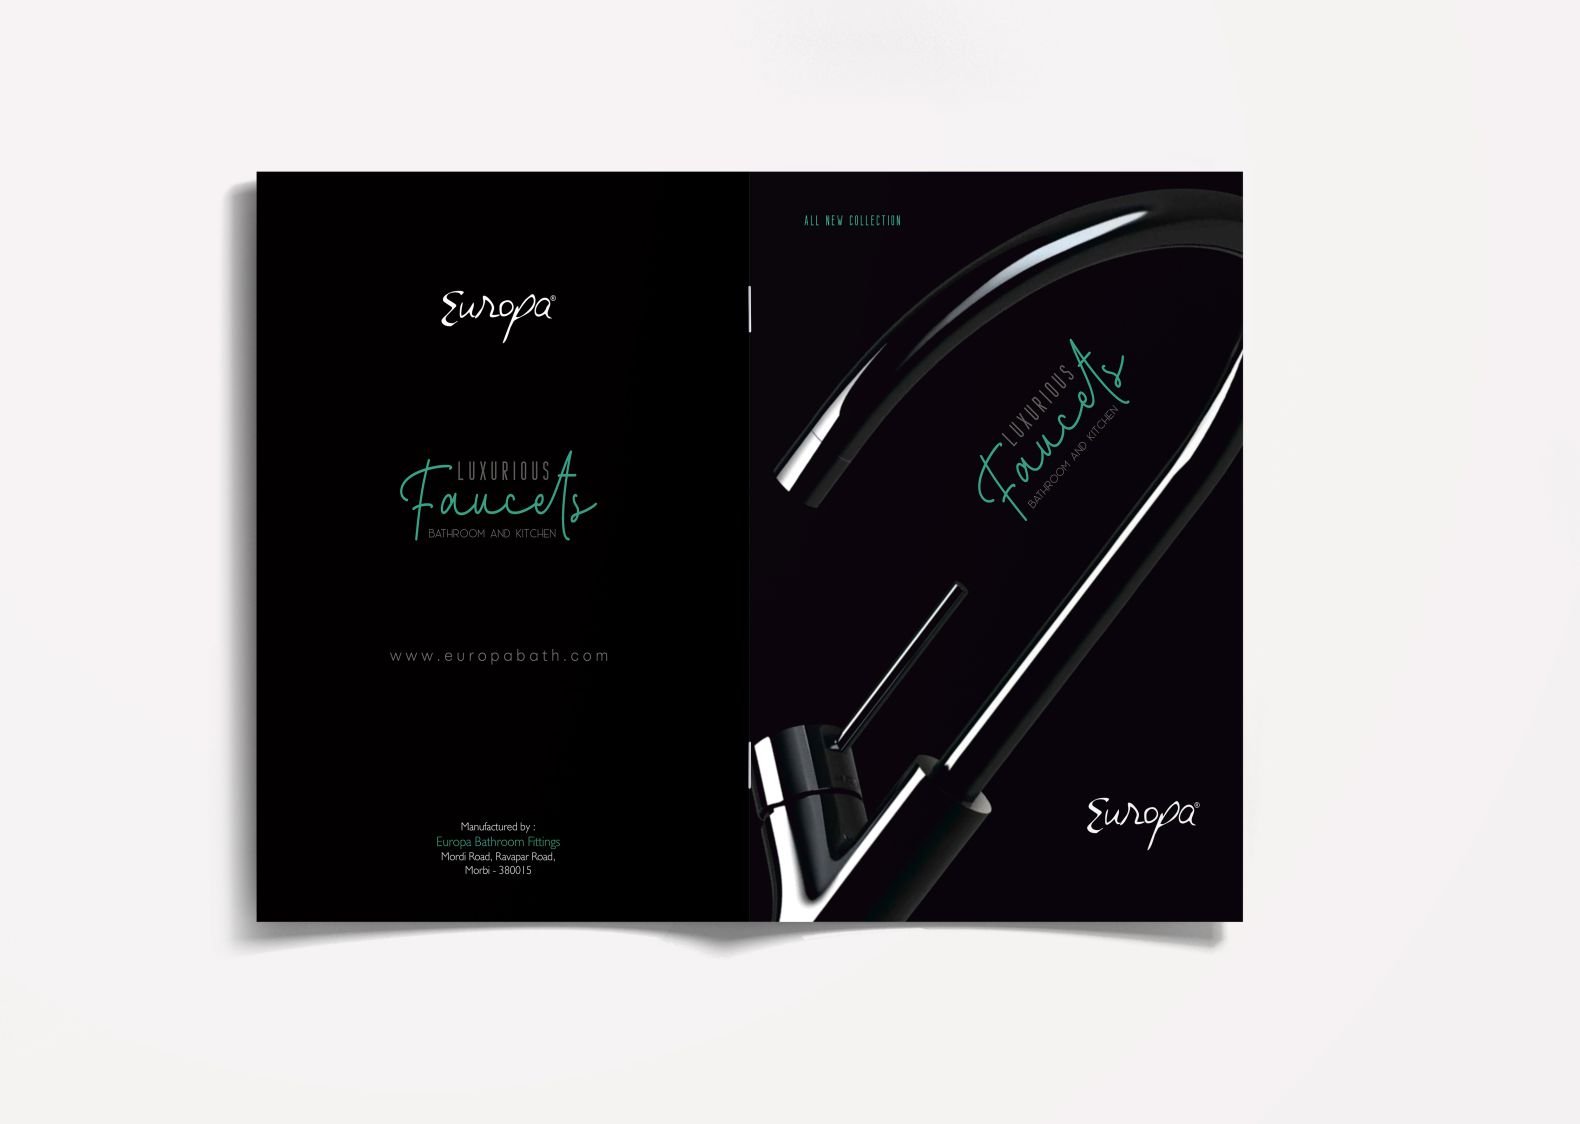 Europa Catalogue Design - Spartan Branding | Creative Services